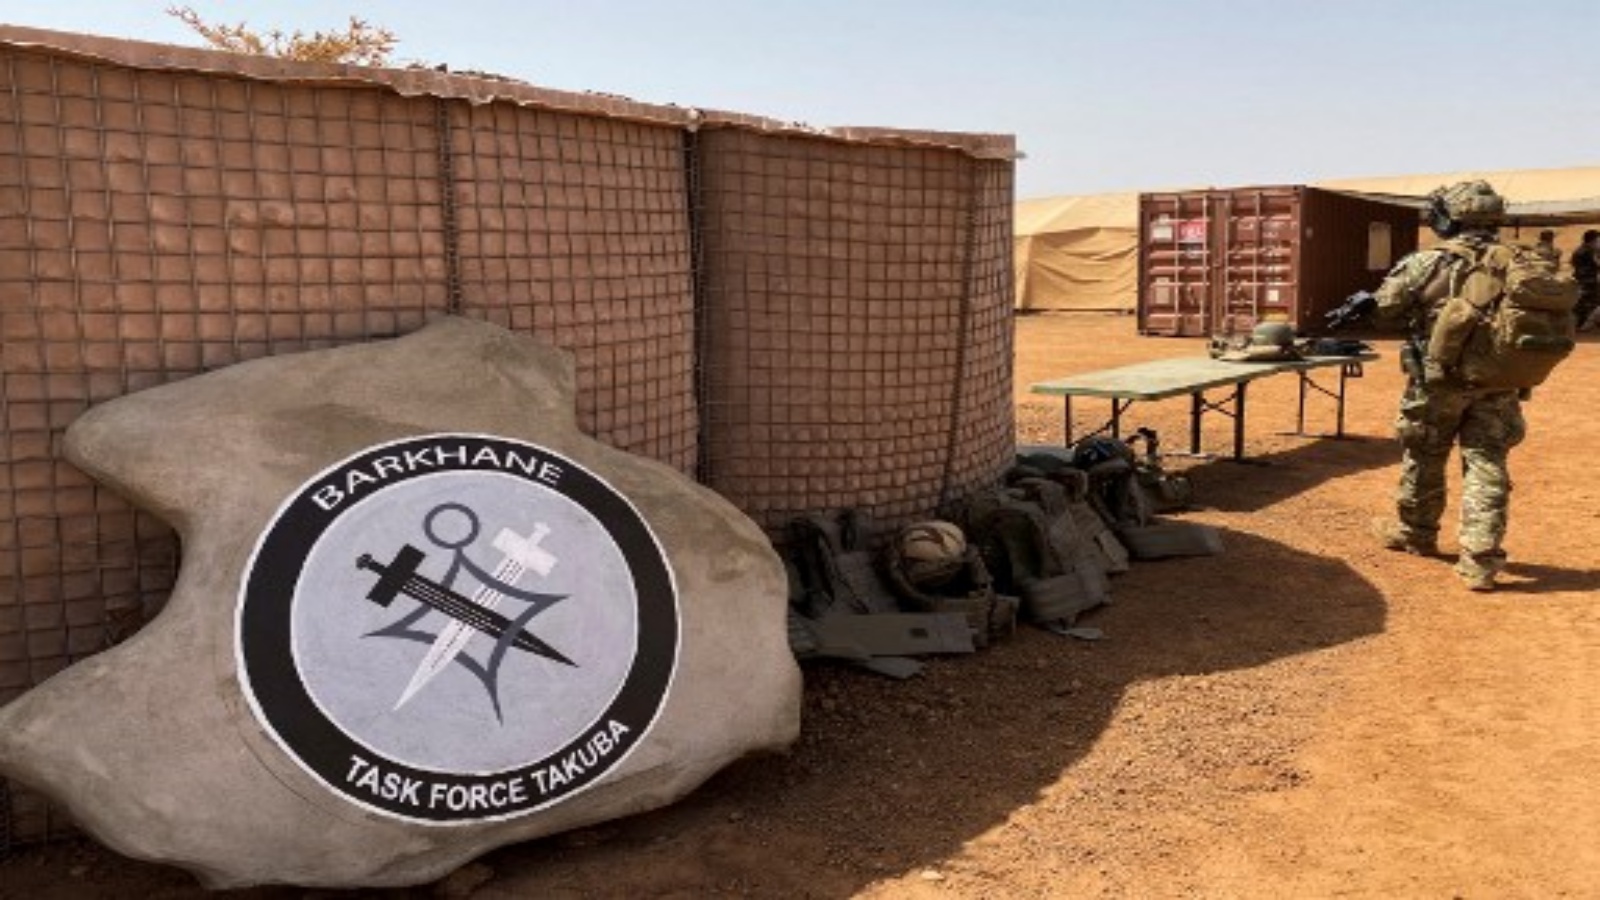 شعار العمليات الخاصة بقيادة فرنسا لقوة مهام برخان الجديدة تاكوبا - وهي مهمة عسكرية متعددة الجنسيات في منطقة الساحل المضطربة في إفريقيا جنوب الصحراء